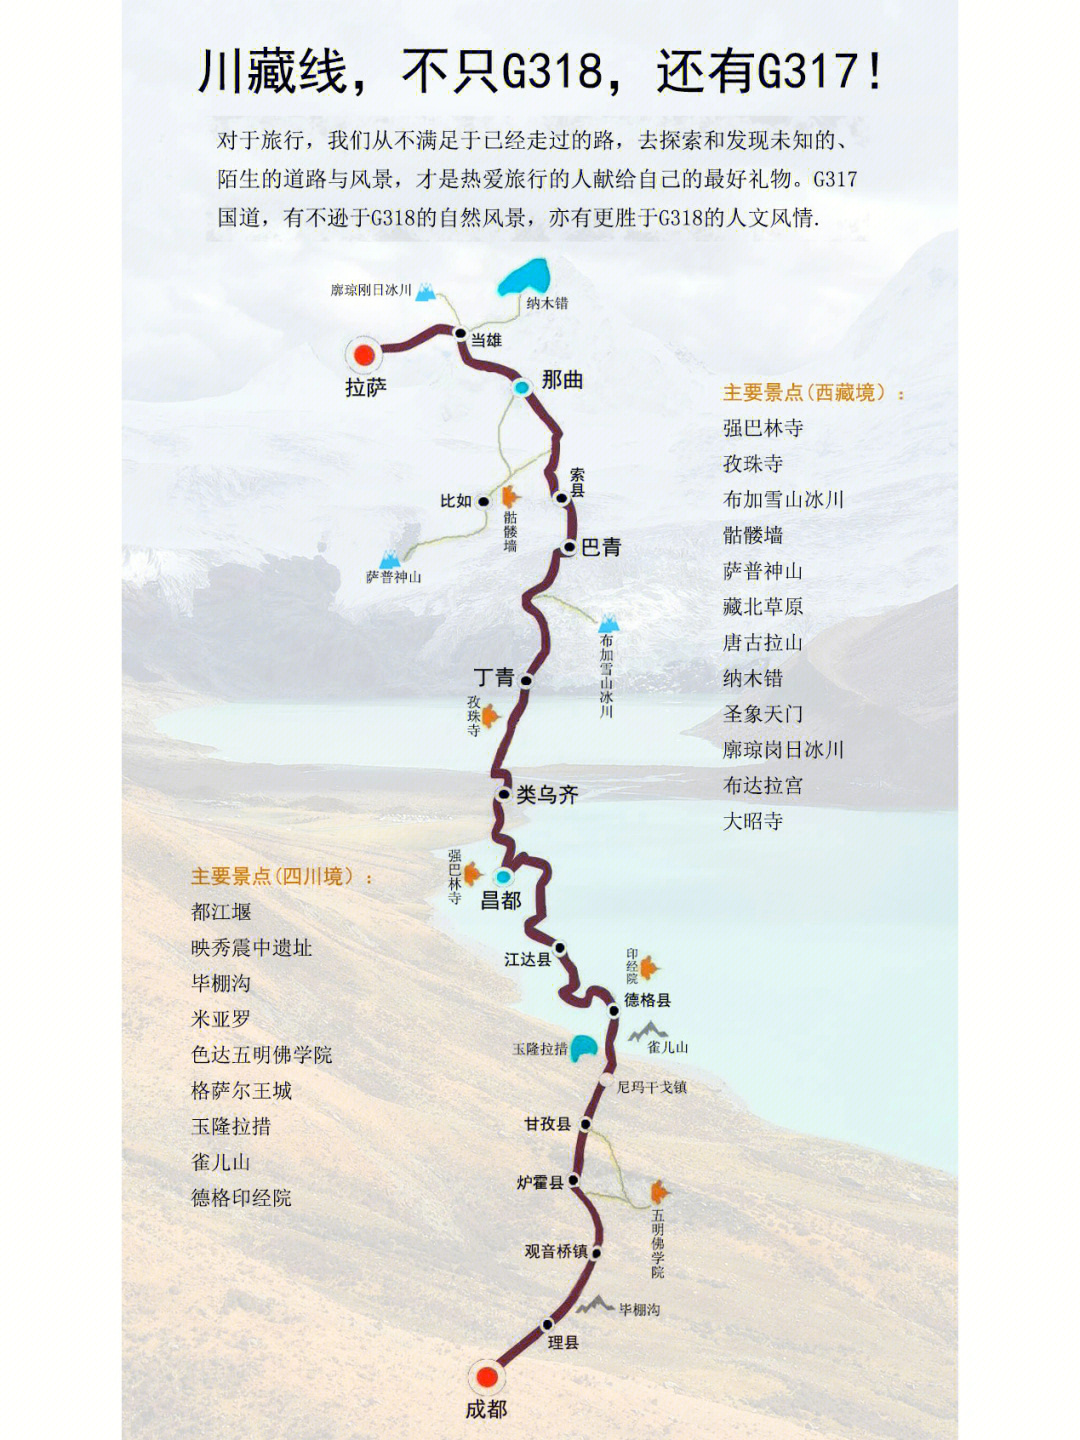 因为提起进藏旅行路线,人们通常想到的必是318川藏(南)线,滇藏线,青藏